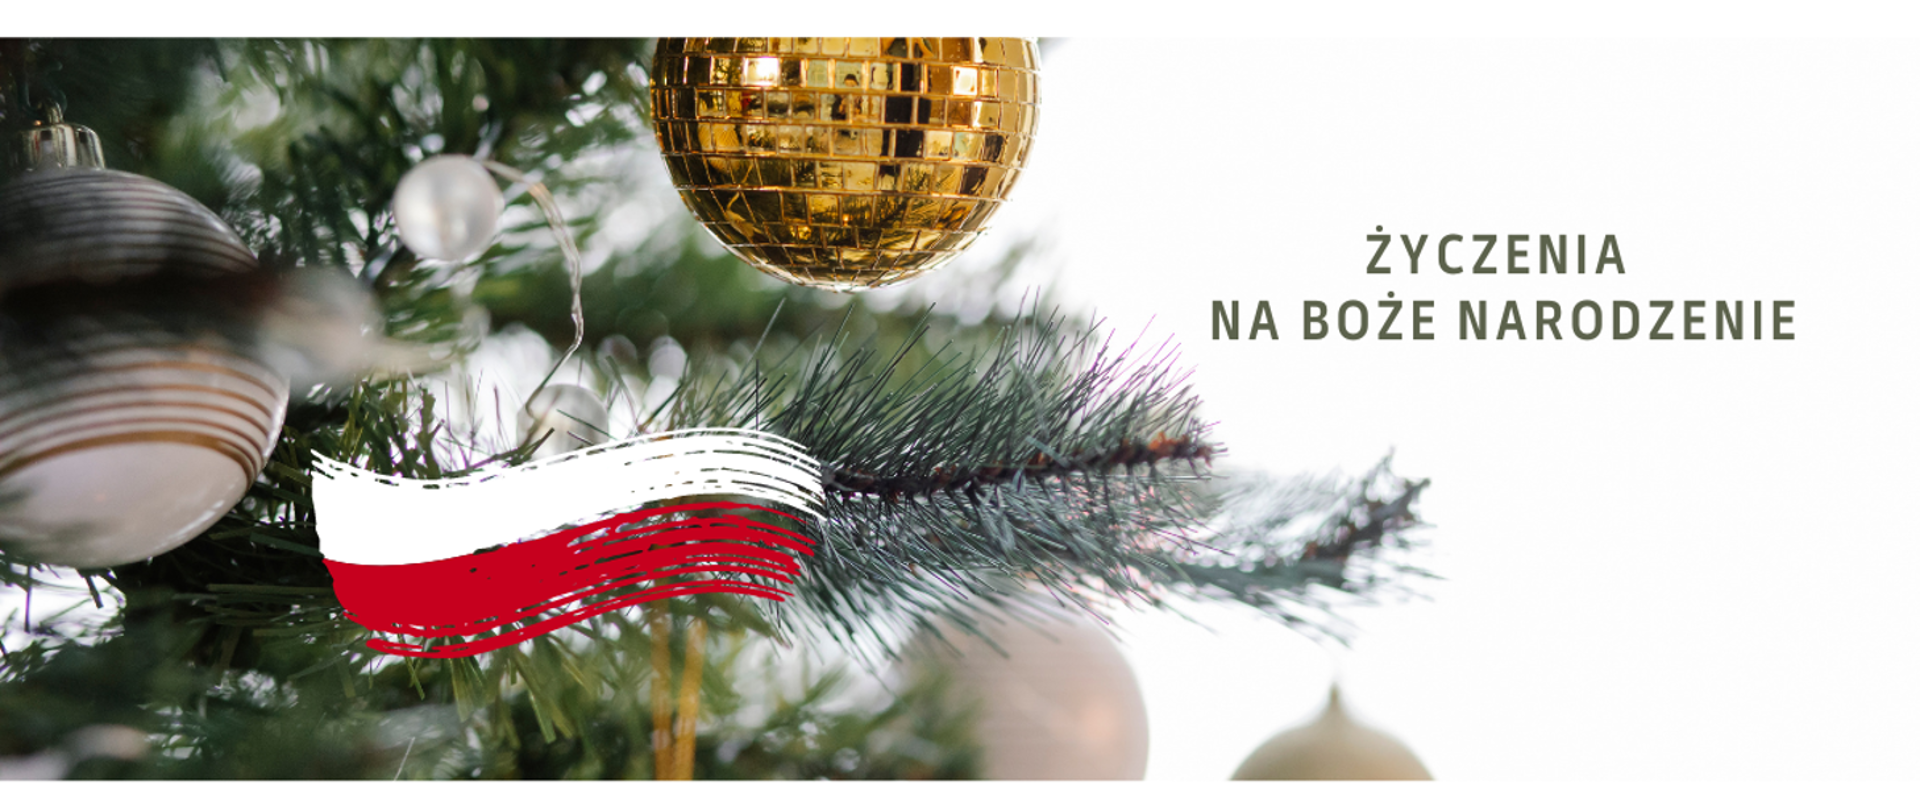 Baner świąteczny. Bombki srebrne i złota na choince, flaga Polski oraz napis "życzenia na Boże Narodzenie"